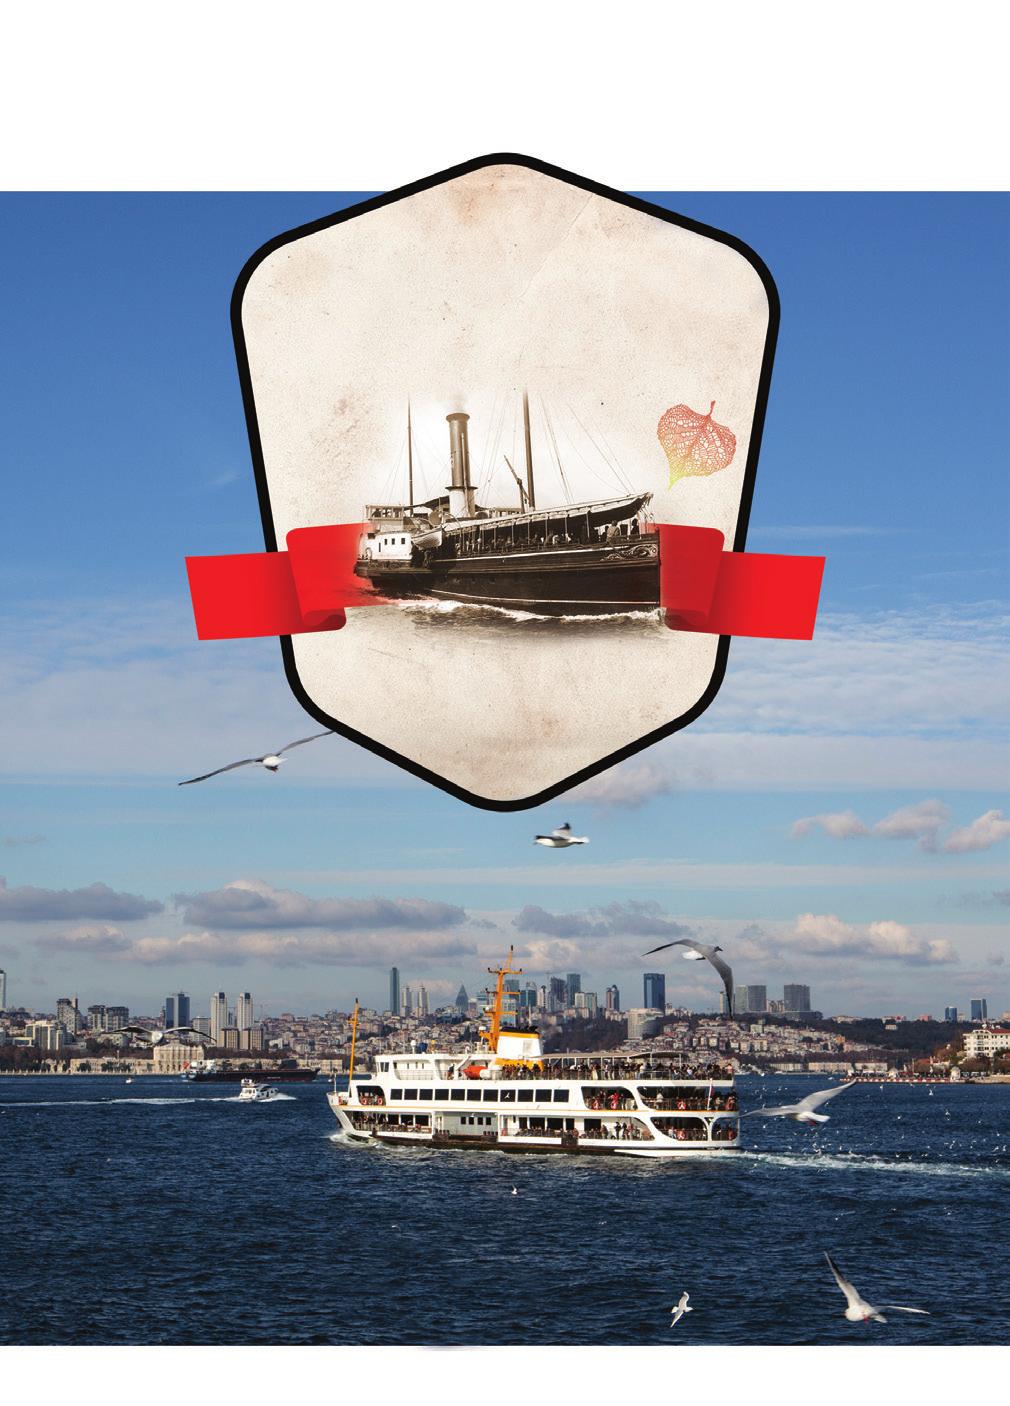 UZUN BOĞAZ TURU - NOSTALJİK TUR Full Bosphorus Cruise - Nostalgic Bosphorus Cruise HERGÜN / Everyday EMİNÖNÜ BEŞİKTAŞ ÜSKÜDAR KANLICA SARIYER R. KAVAĞI A.